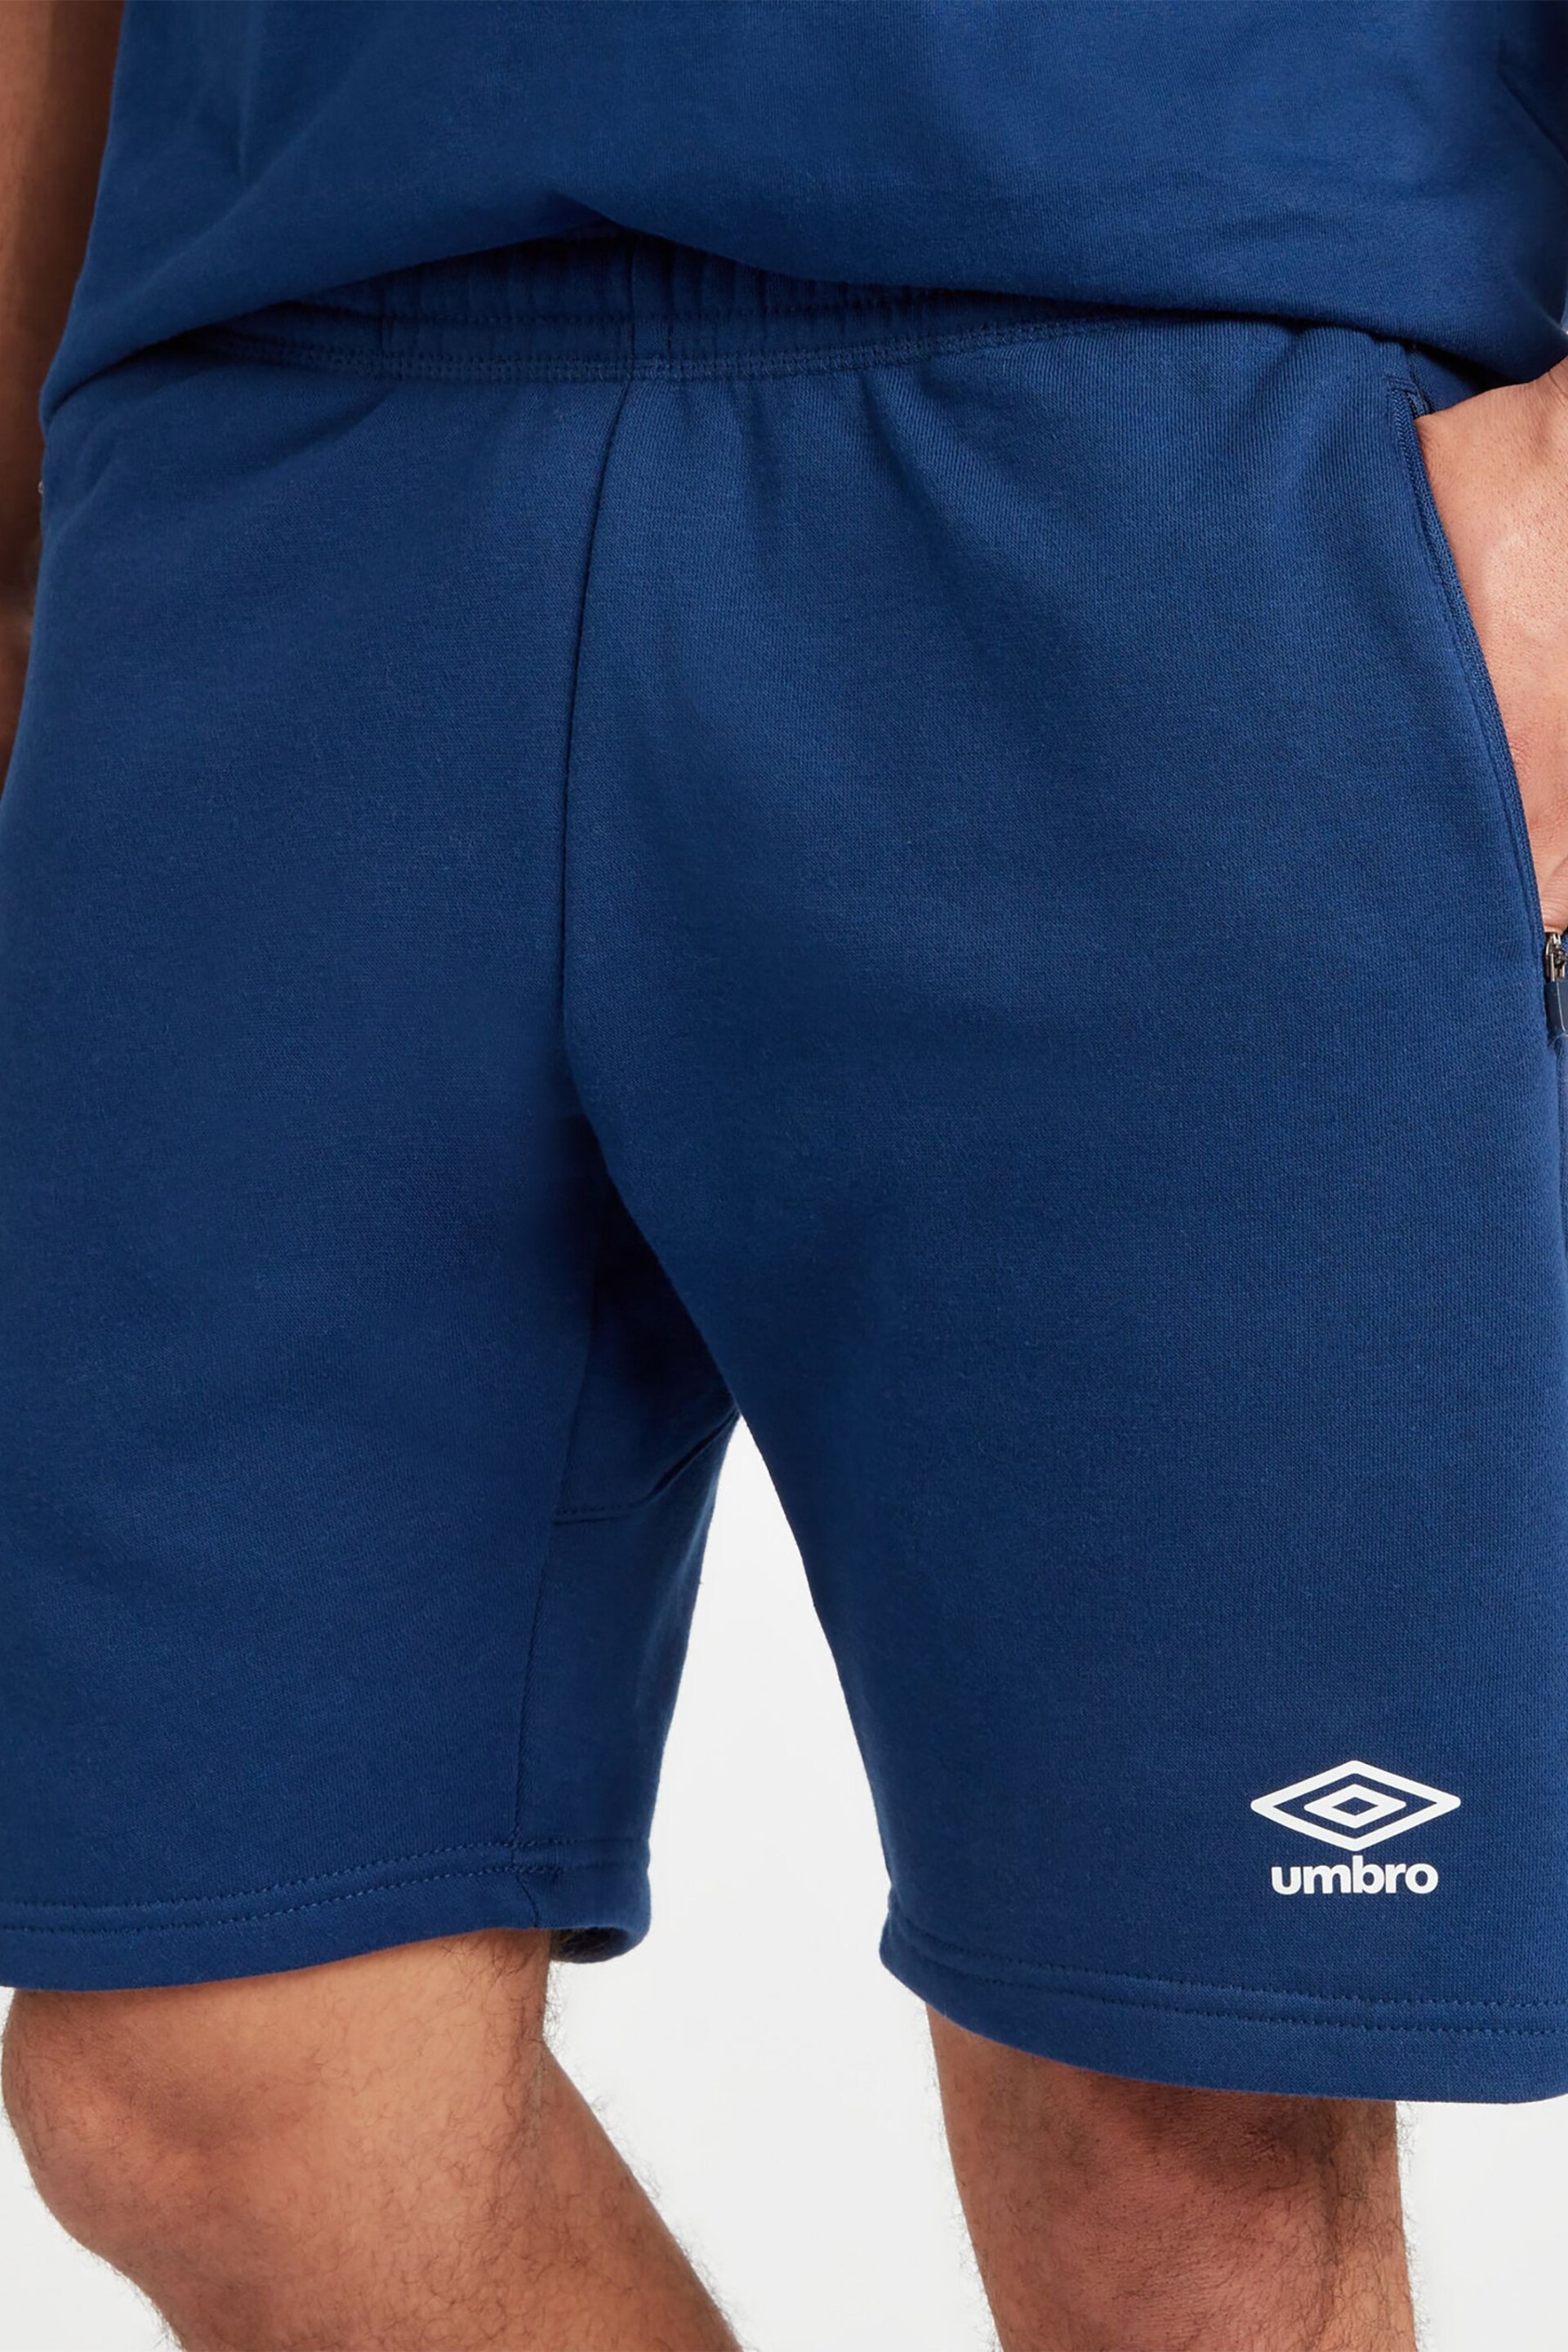 Umbro Blue Club Leisure Jog Shorts - Image 4 of 5